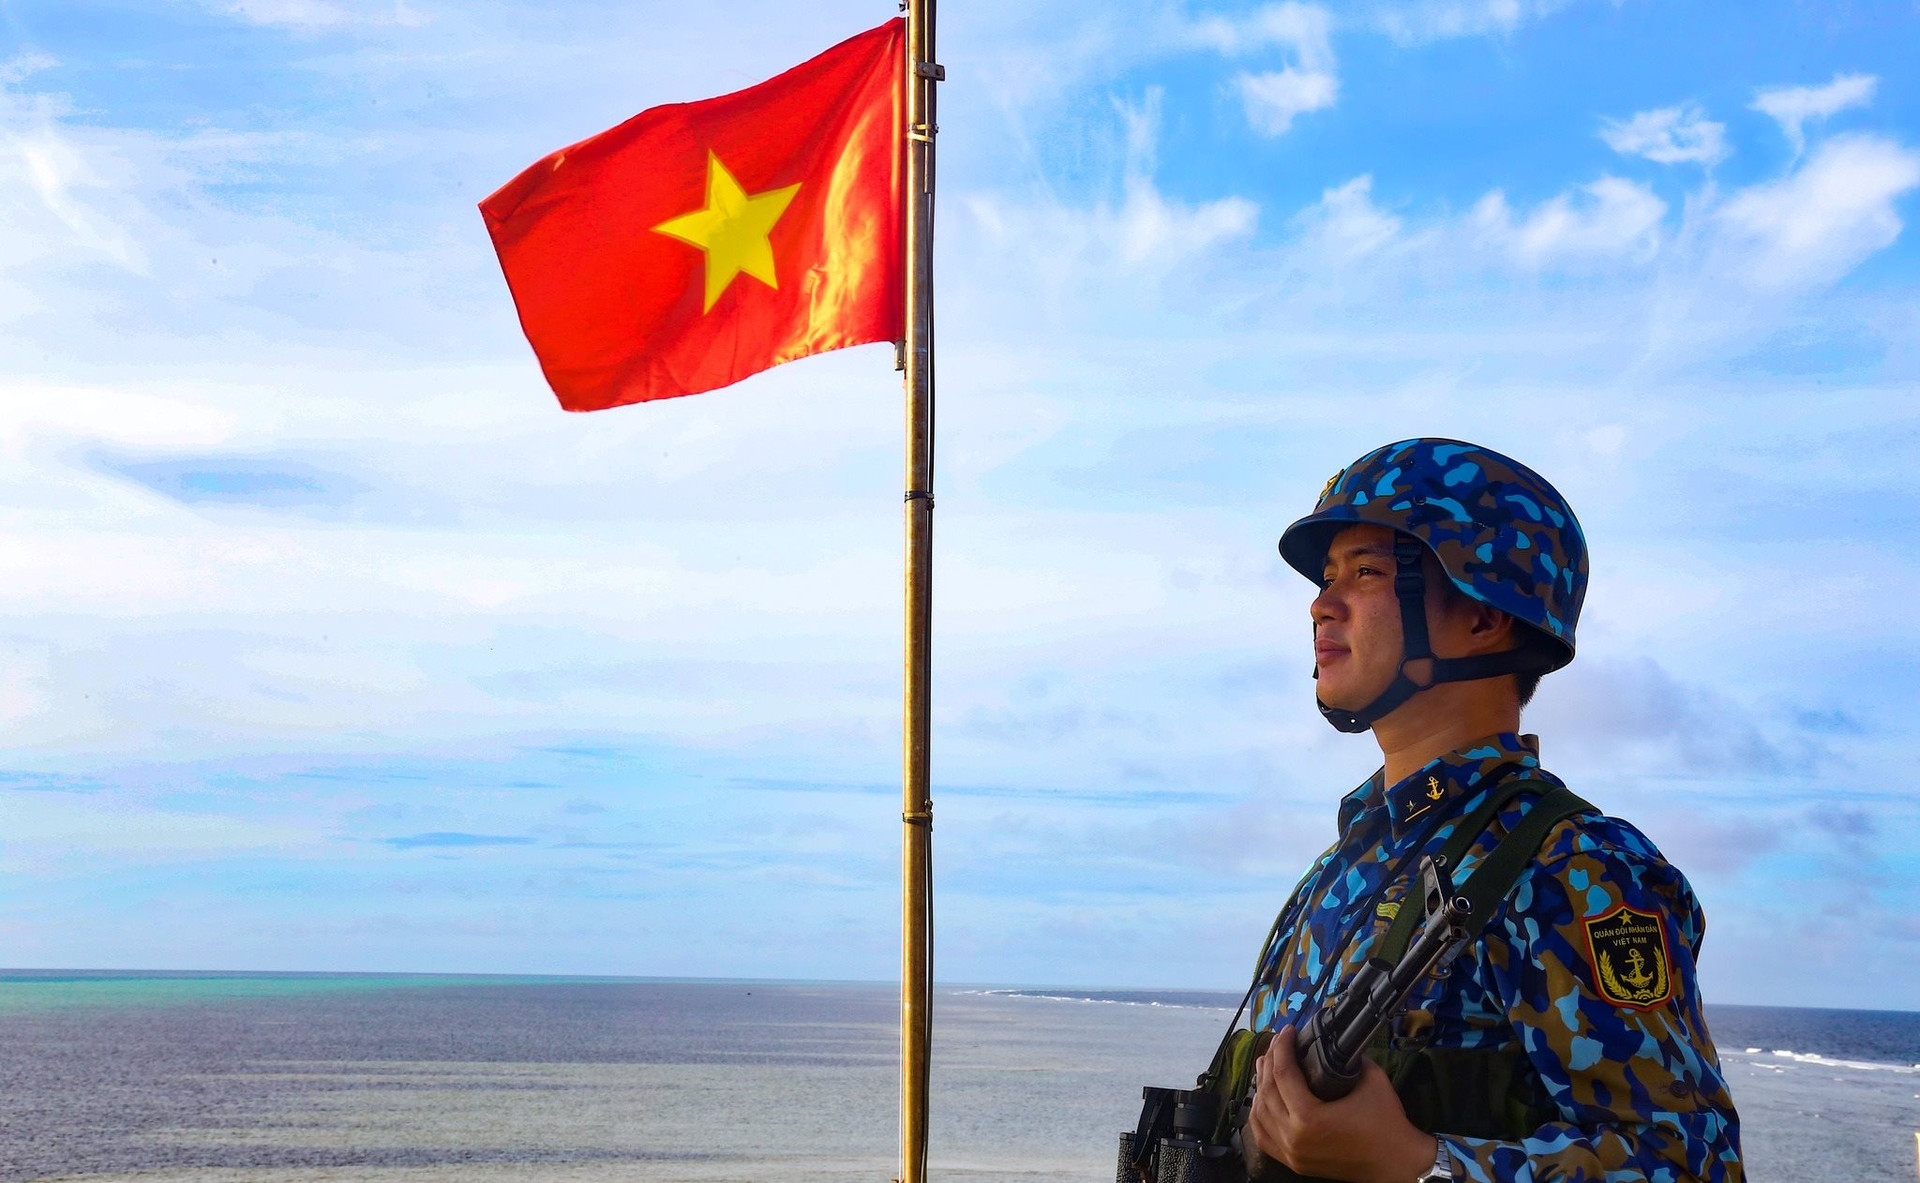 Chủ quyền Biển Đông luôn là vấn đề đáng quan tâm của toàn bộ dân tộc Việt Nam. Hiểu rõ điều đó, trang web này mong muốn truyền tải thông tin và cập nhật những diễn biến mới nhất về chủ quyền biển đông. Cùng với những hình ảnh đẹp và ấn tượng, chúng ta sẽ cảm nhận sự mạnh mẽ, kiên cường và quyết liệt của dân tộc Việt Nam.